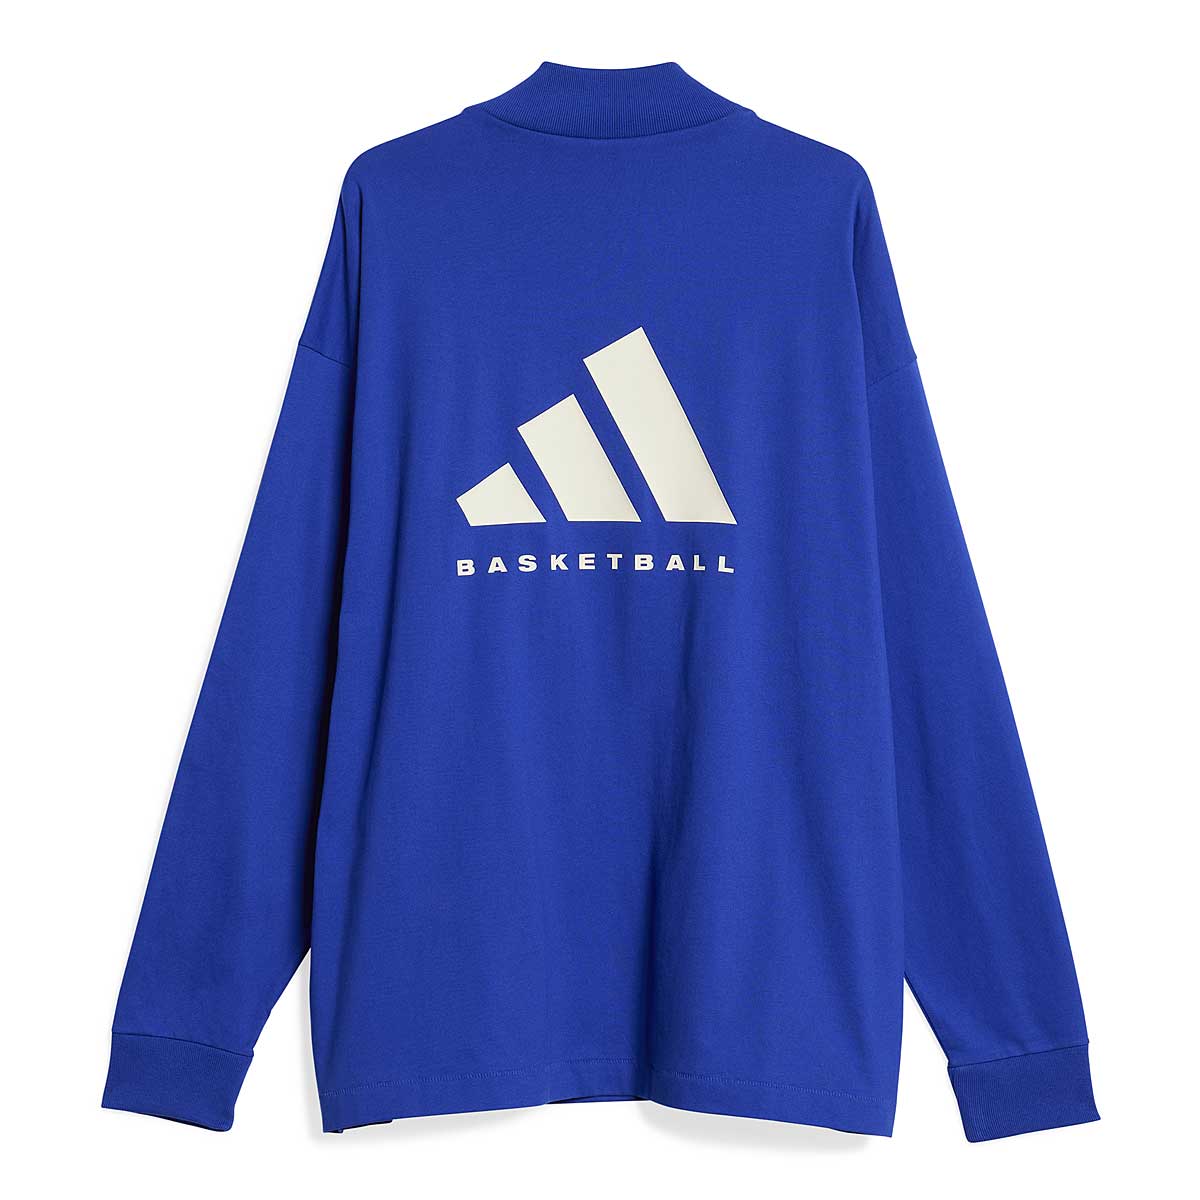 Image of Adidas Basketball Longsleeve, Blue